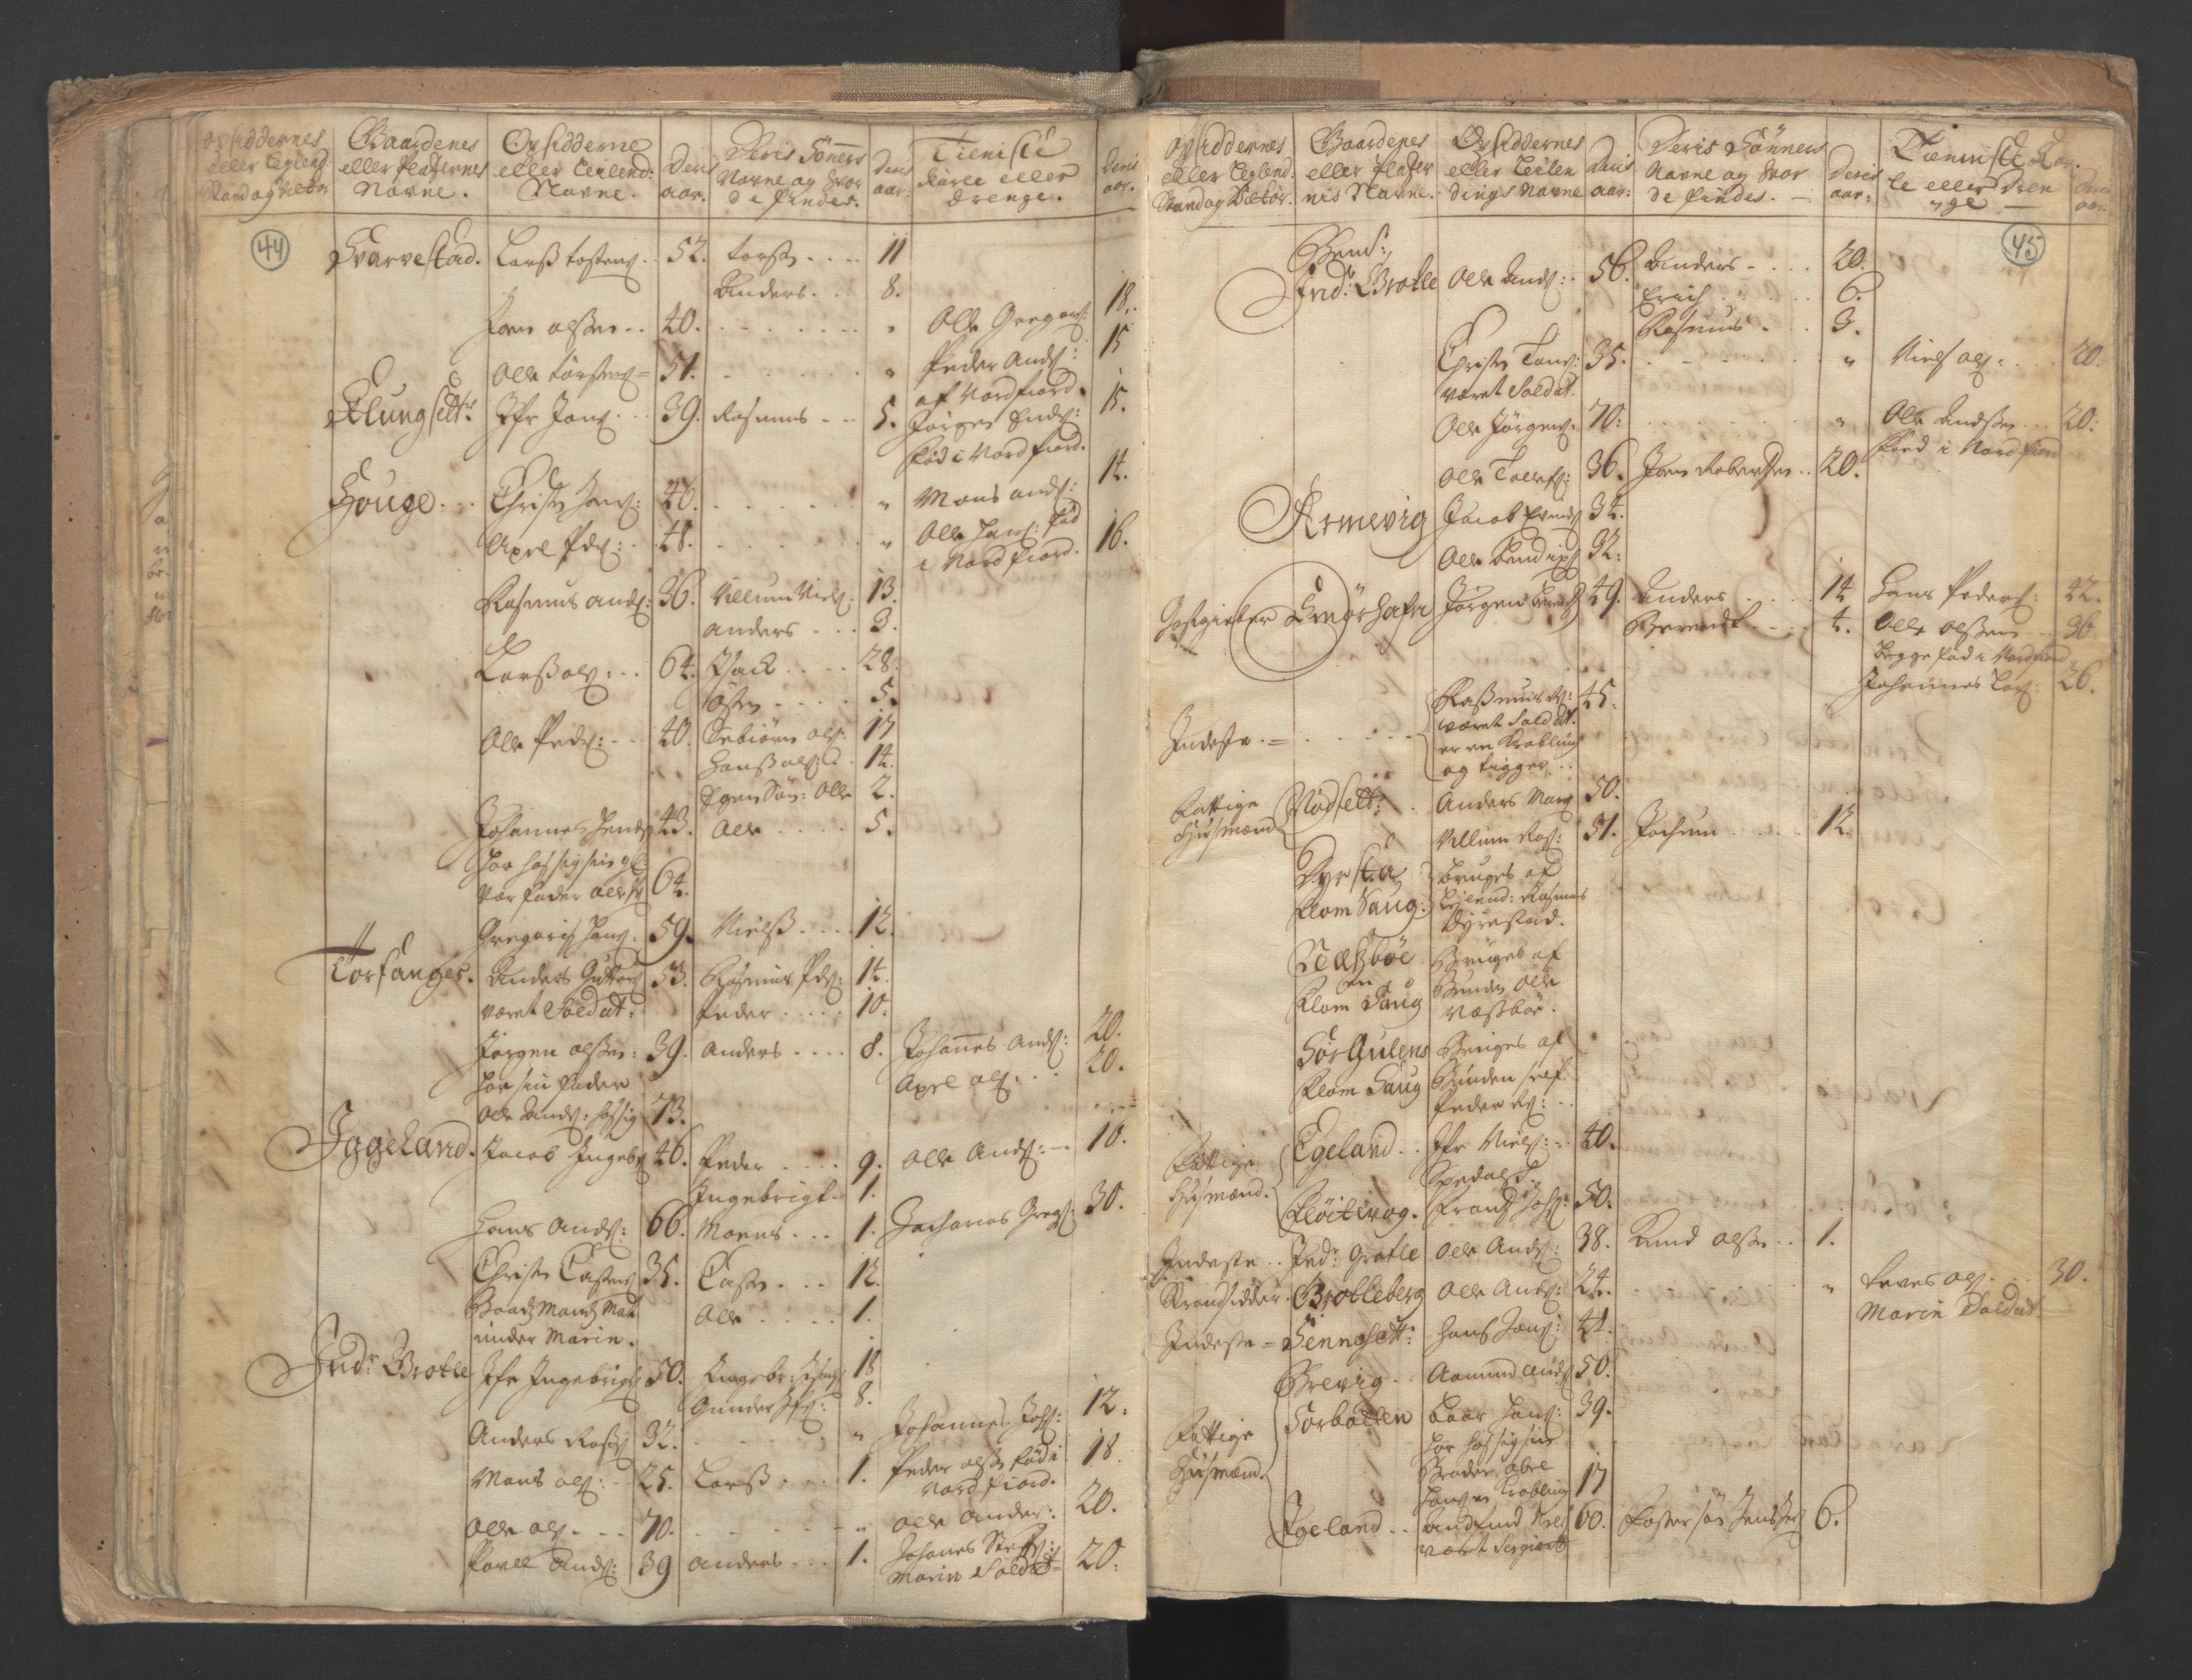 RA, Census (manntall) 1701, no. 9: Sunnfjord fogderi, Nordfjord fogderi and Svanø birk, 1701, p. 44-45